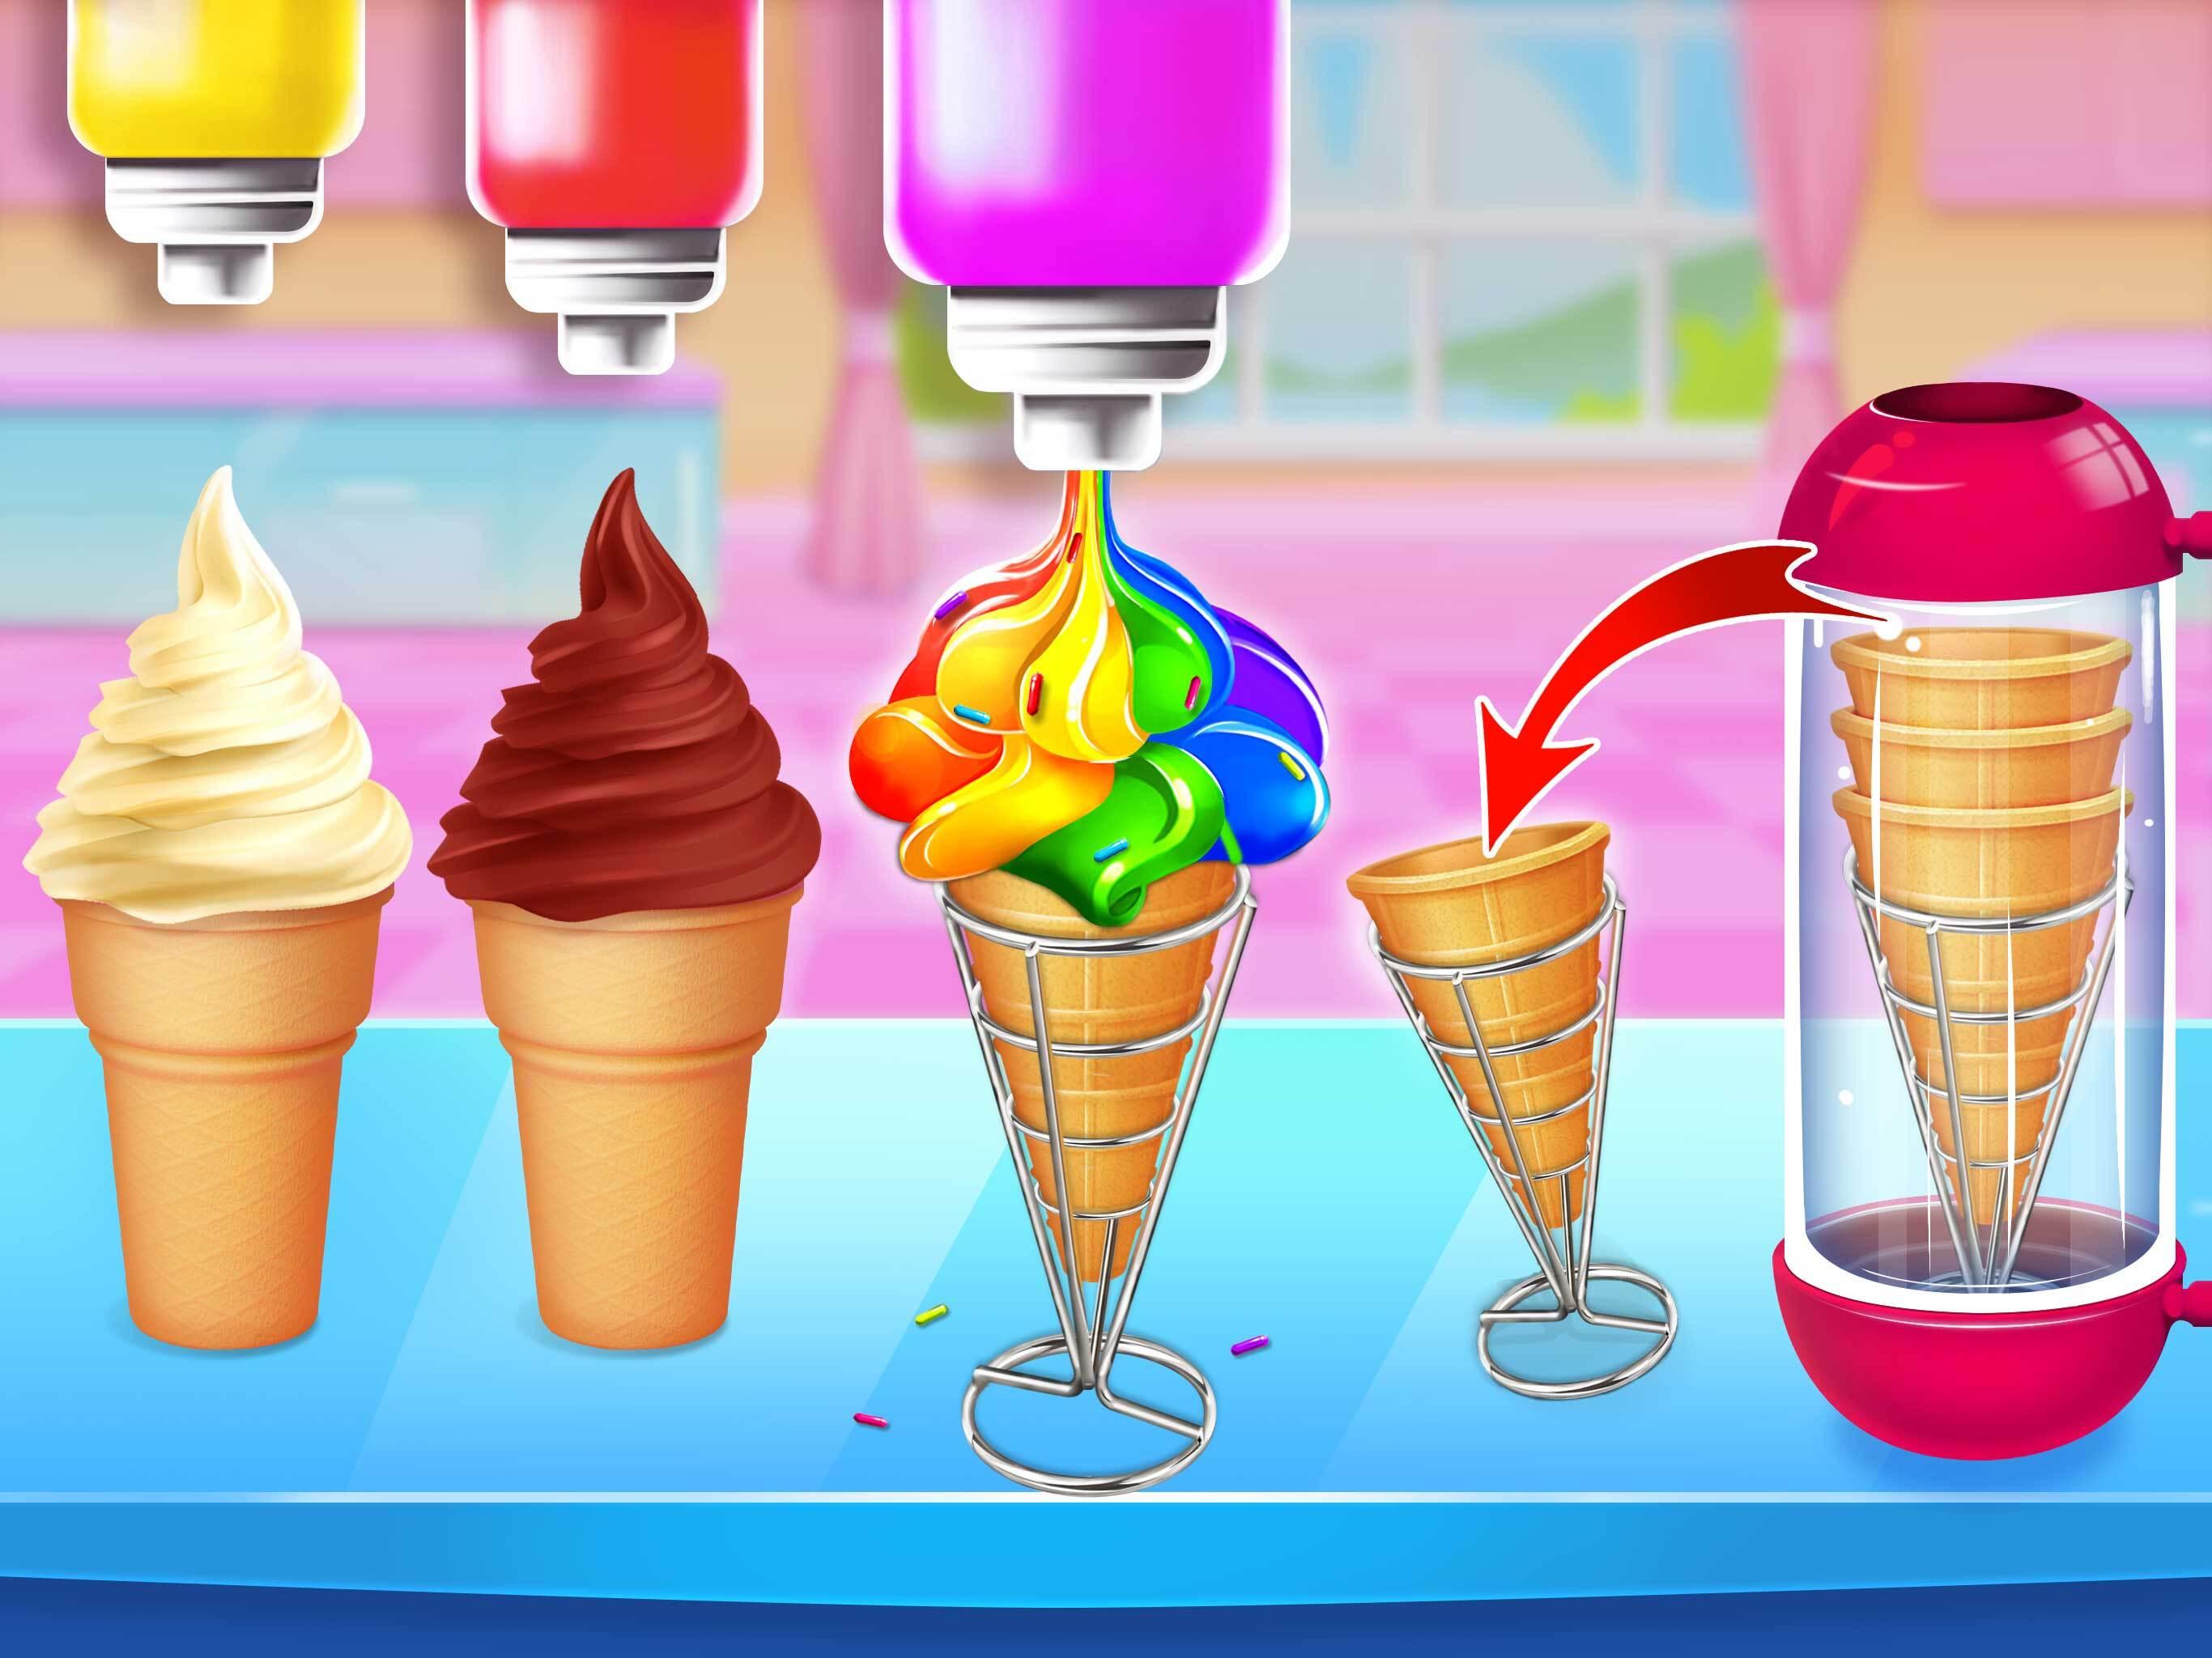 Start ice. Ice Cream Cone. Ice Cream игра. Мороженщик Ice Cream игра. Фрий игра мороженное.